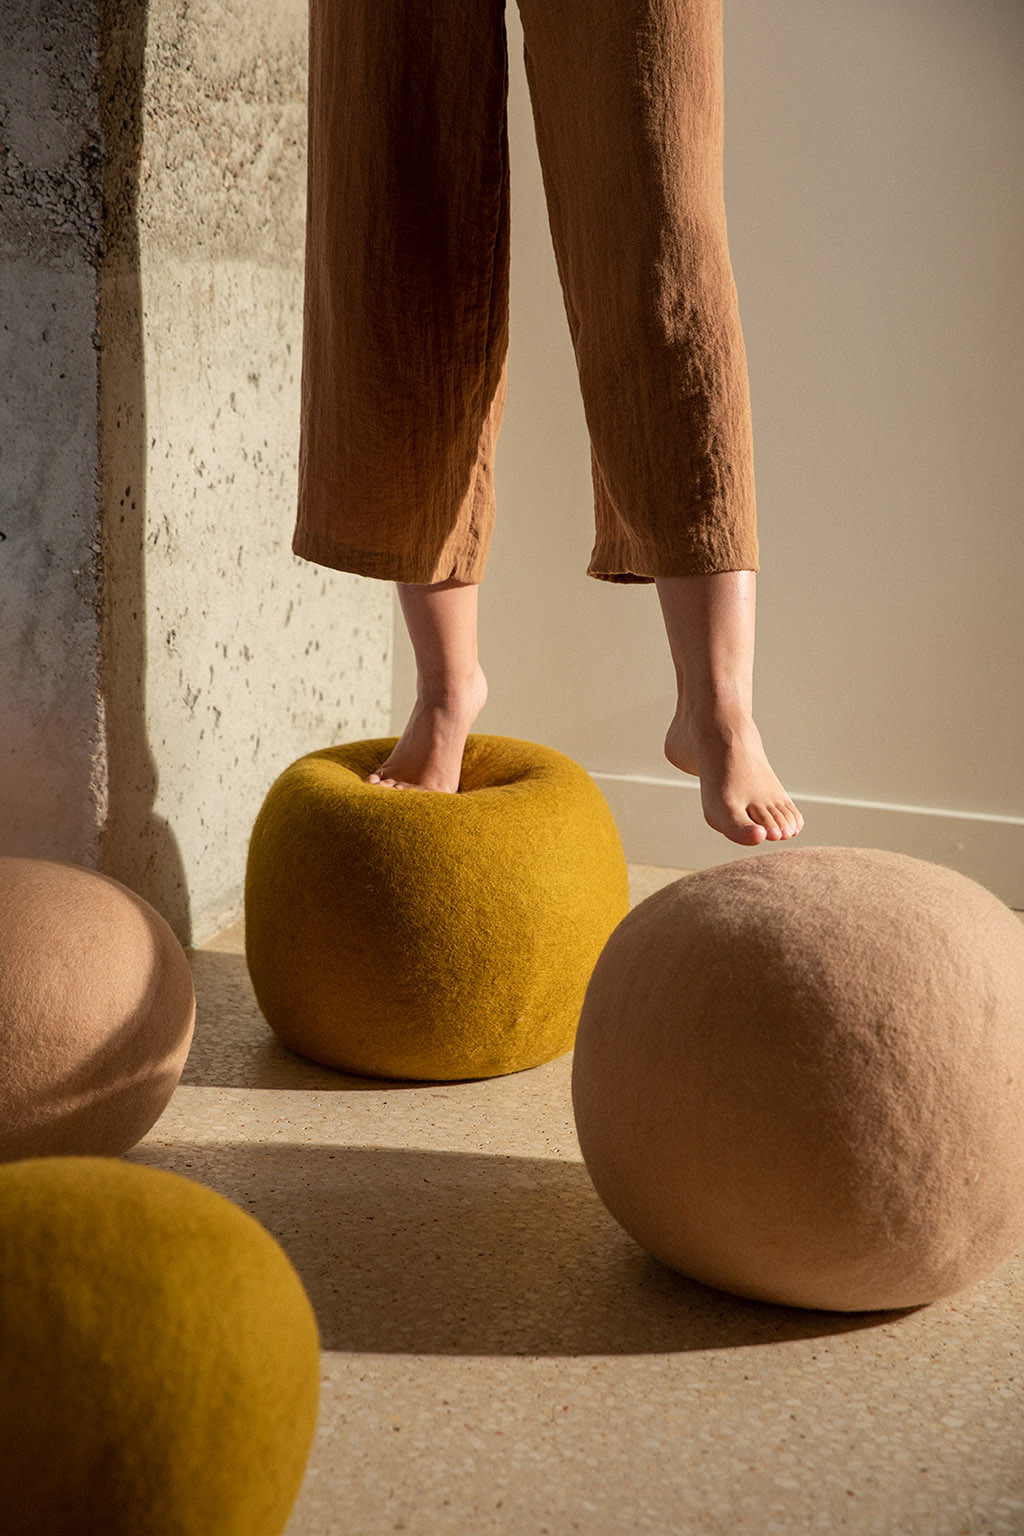 Felt wool beanbag balls for a playful decoration